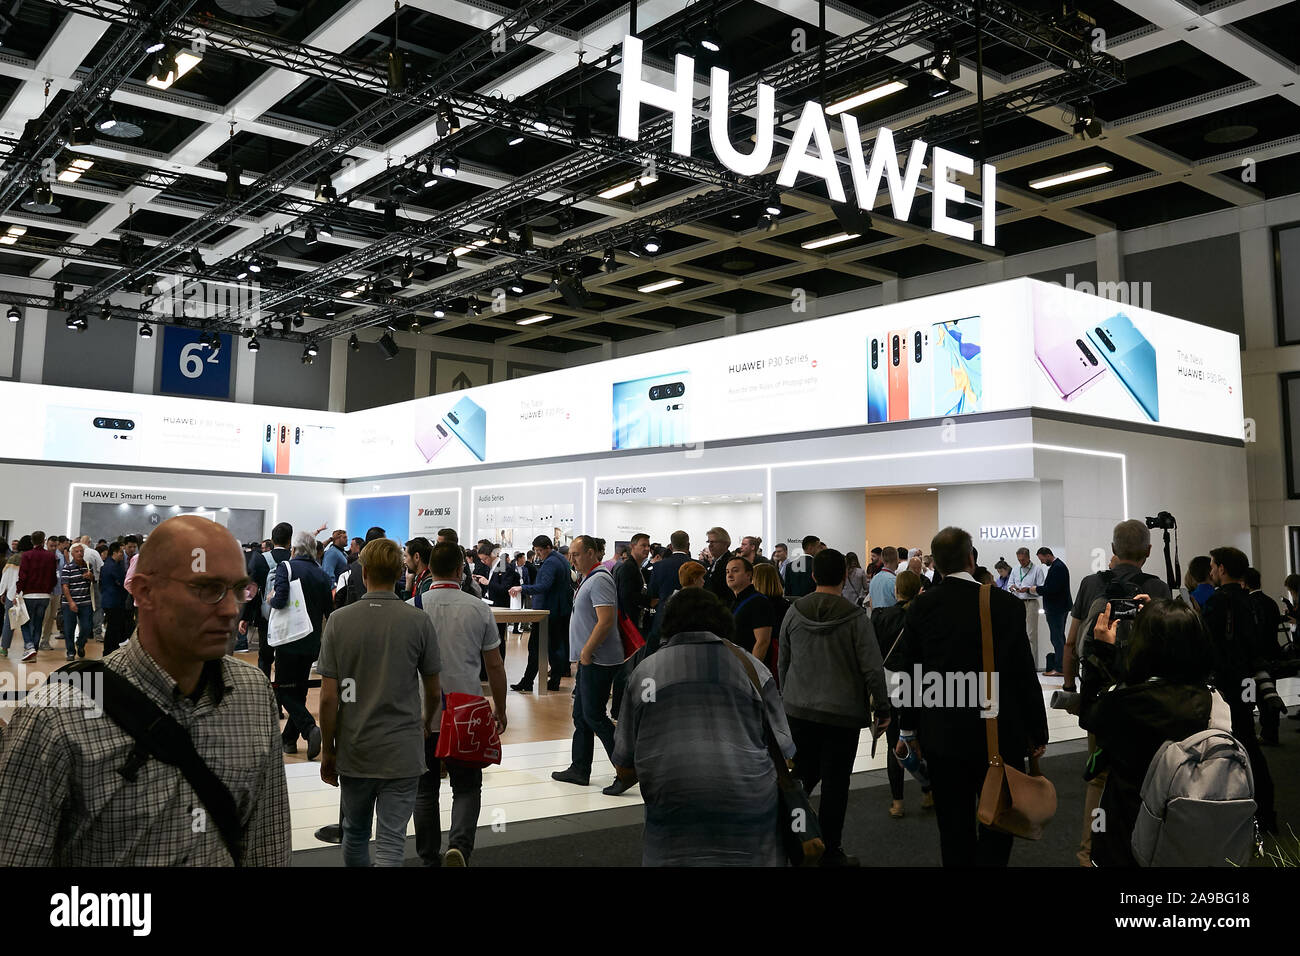 06.09.2019, Berlin, Berlin, Allemagne - La HUAWEI stand à l'IFA. La société chinoise présentera ses innovations dans le domaine de la téléphonie mobile Banque D'Images